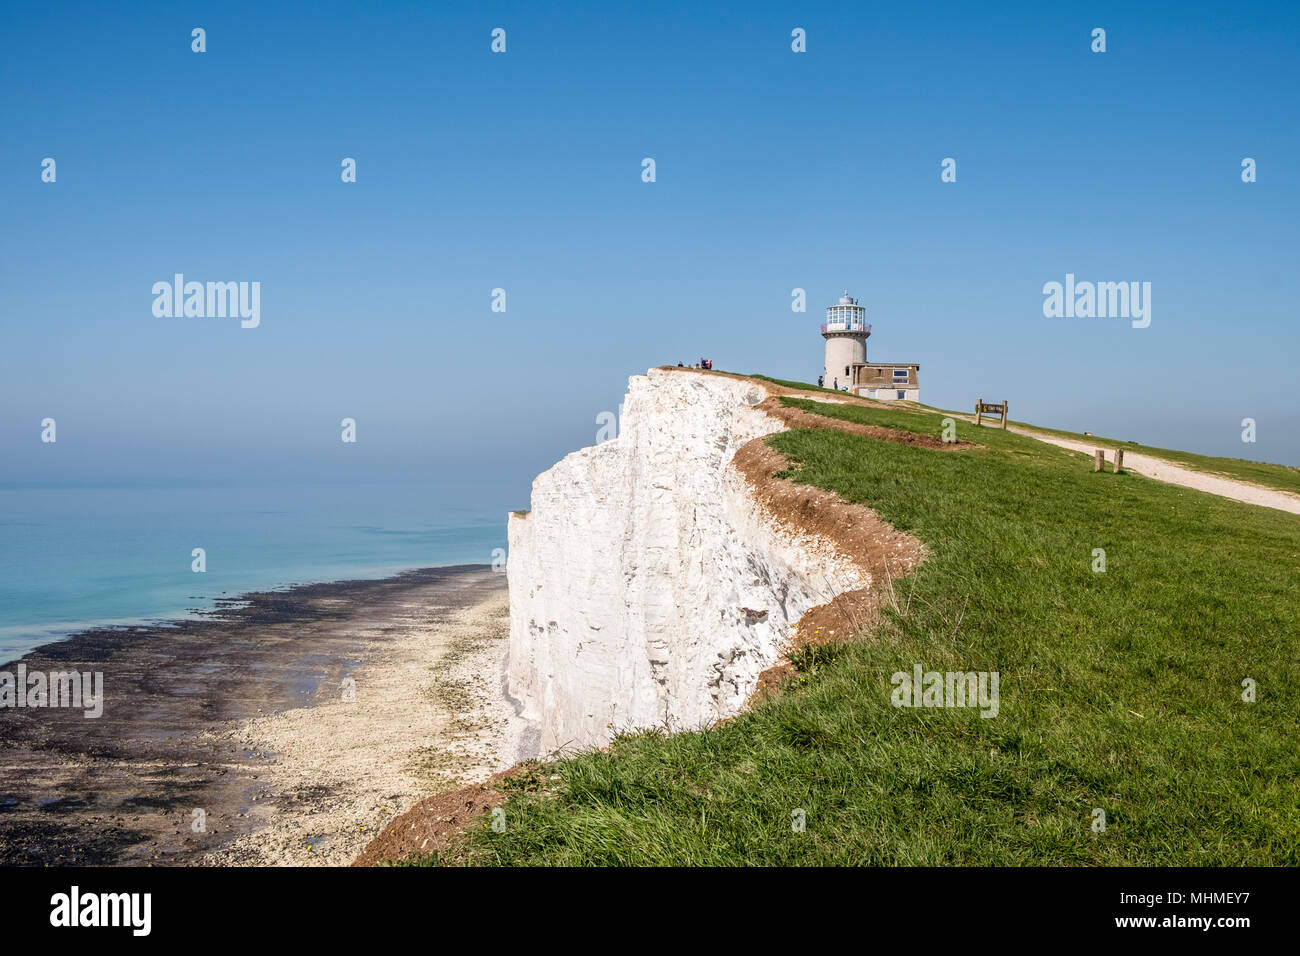 Belle Tout phare, également connu sous le nom de Belle Toute, est un phare désaffecté à Beachy Head, East Sussex, Angleterre du Sud, FR, UK Banque D'Images